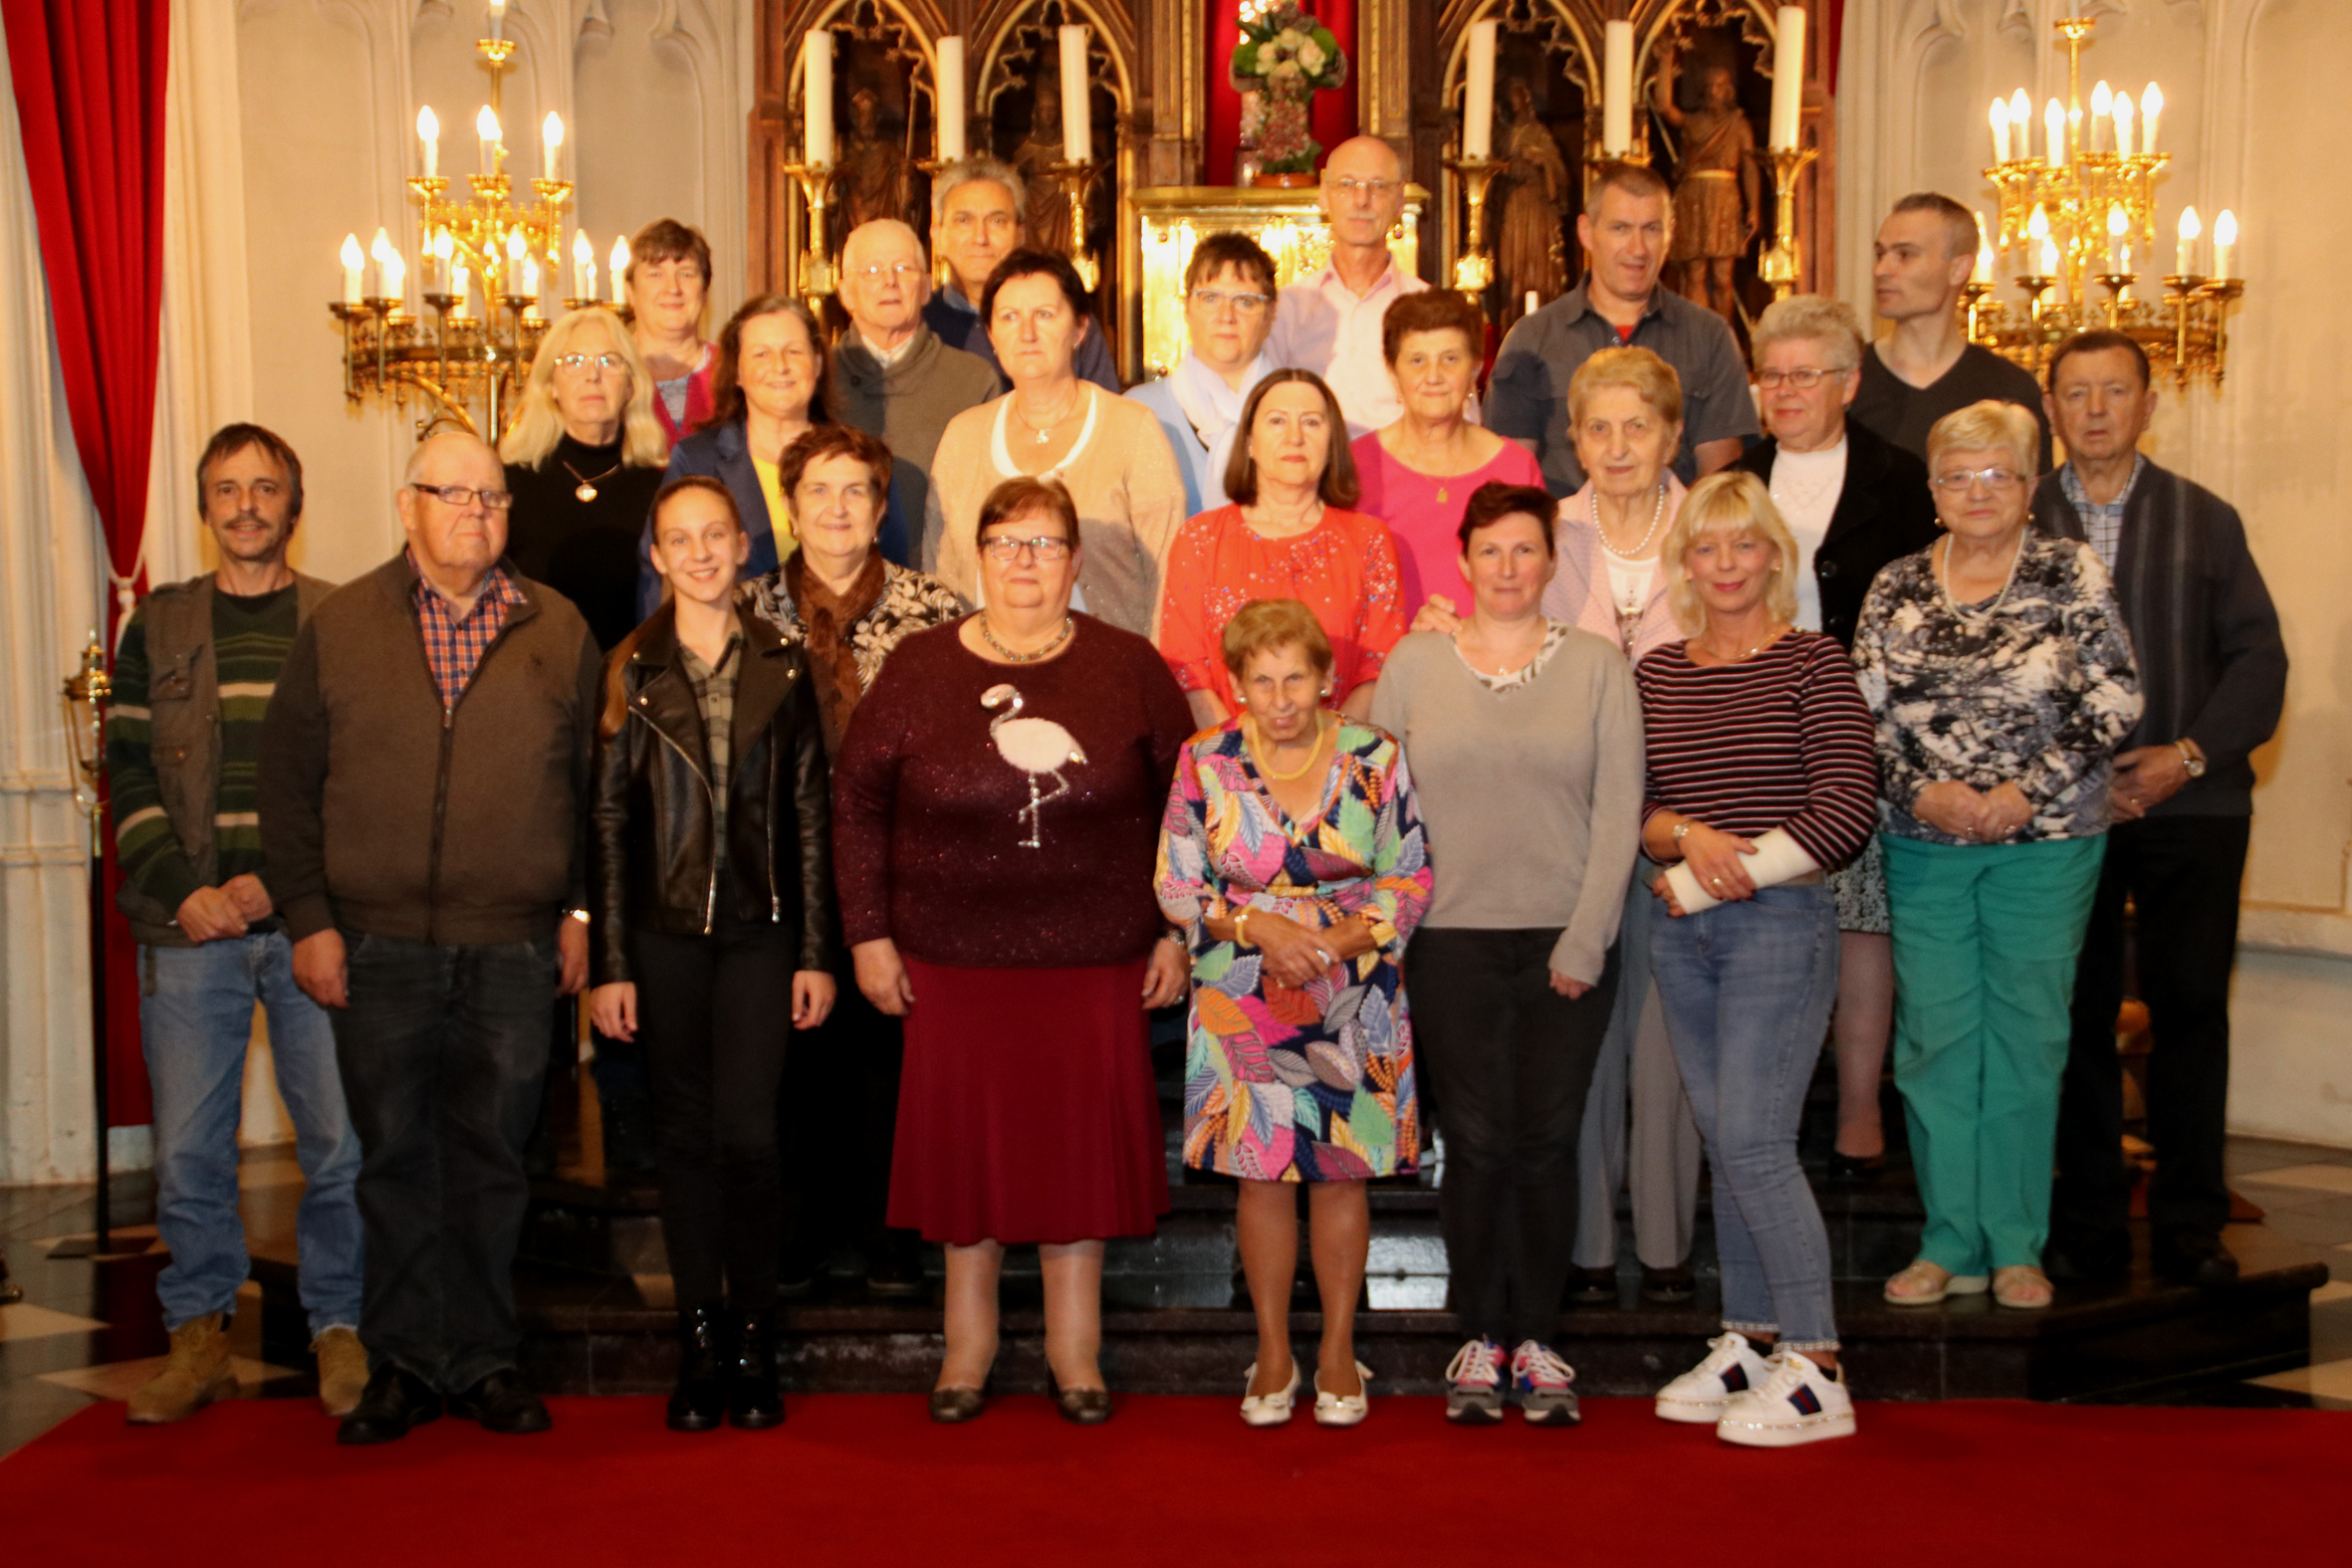 Wellense parochies worden één pastorale eenheid (Wellen) - Het Belang van Limburg